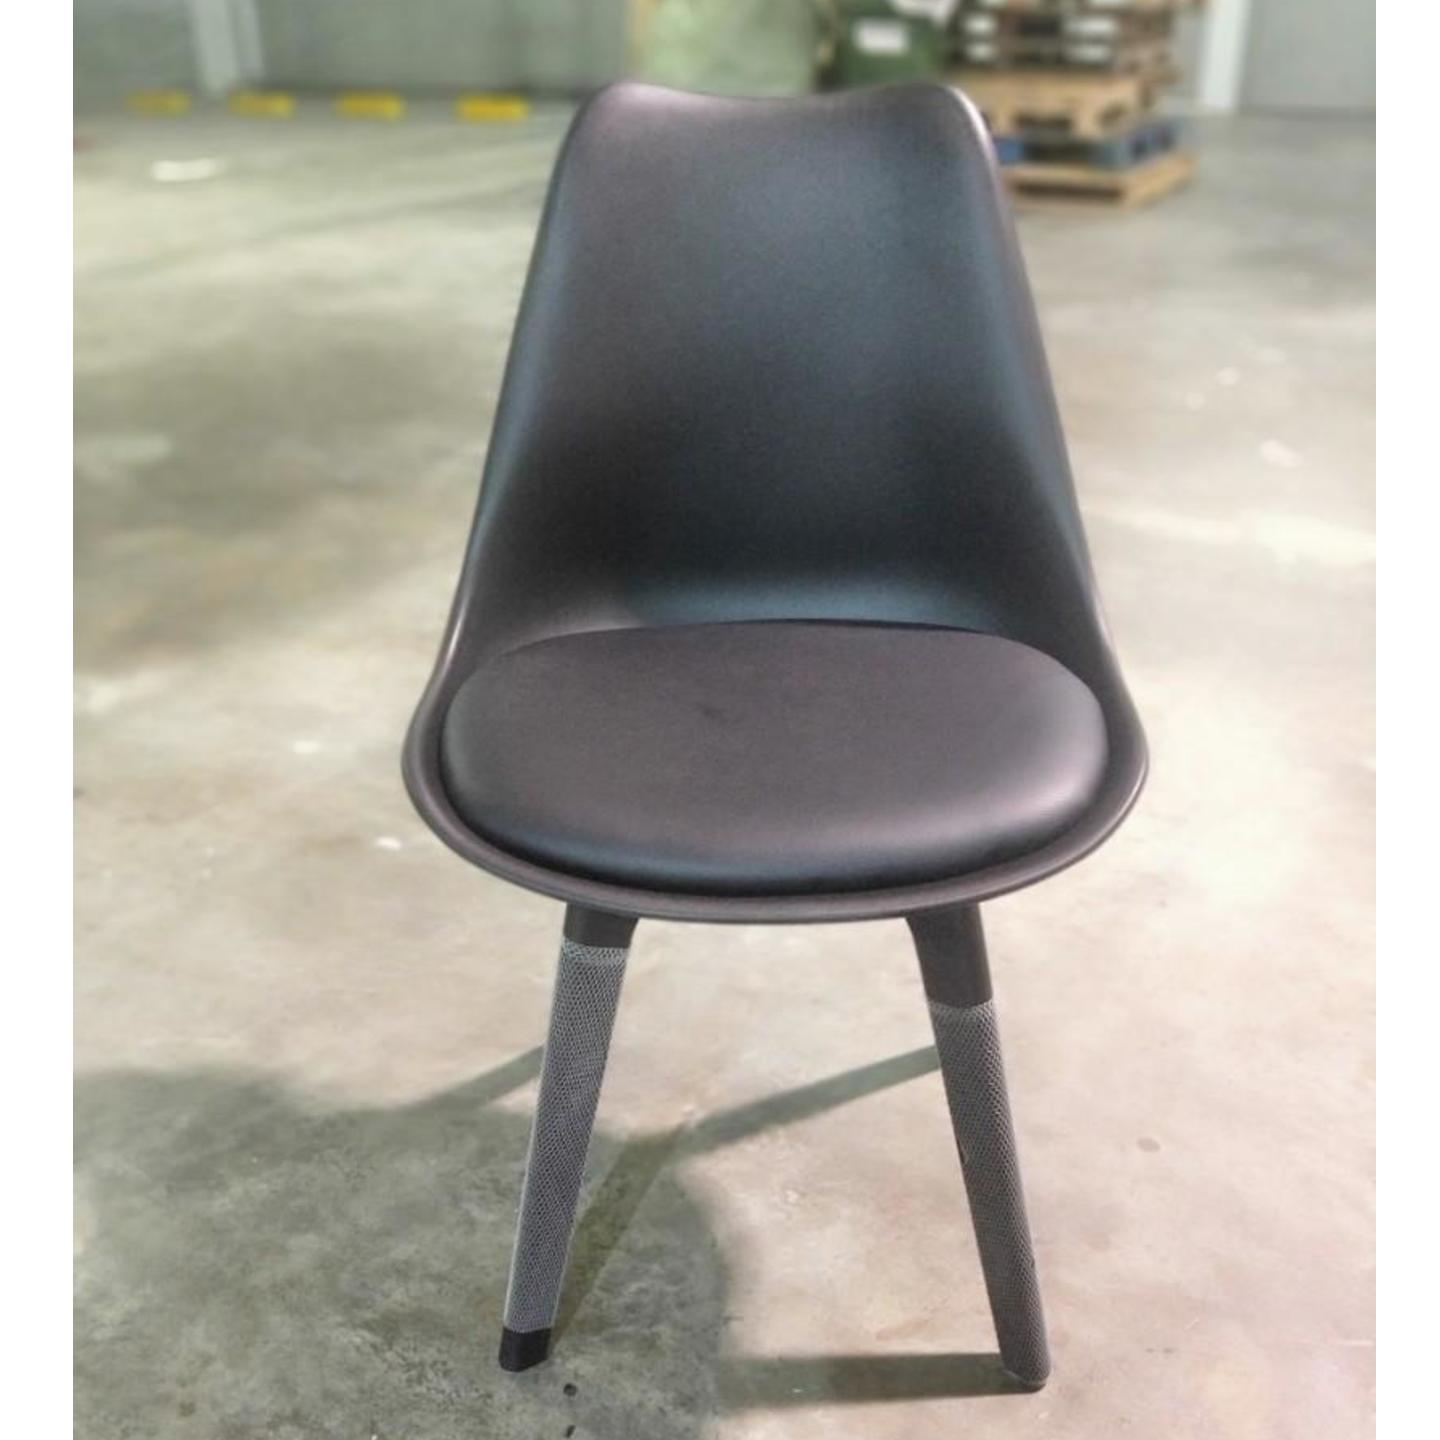 4 x VARIS Designer Scandi Dining Chair in BLACK SET